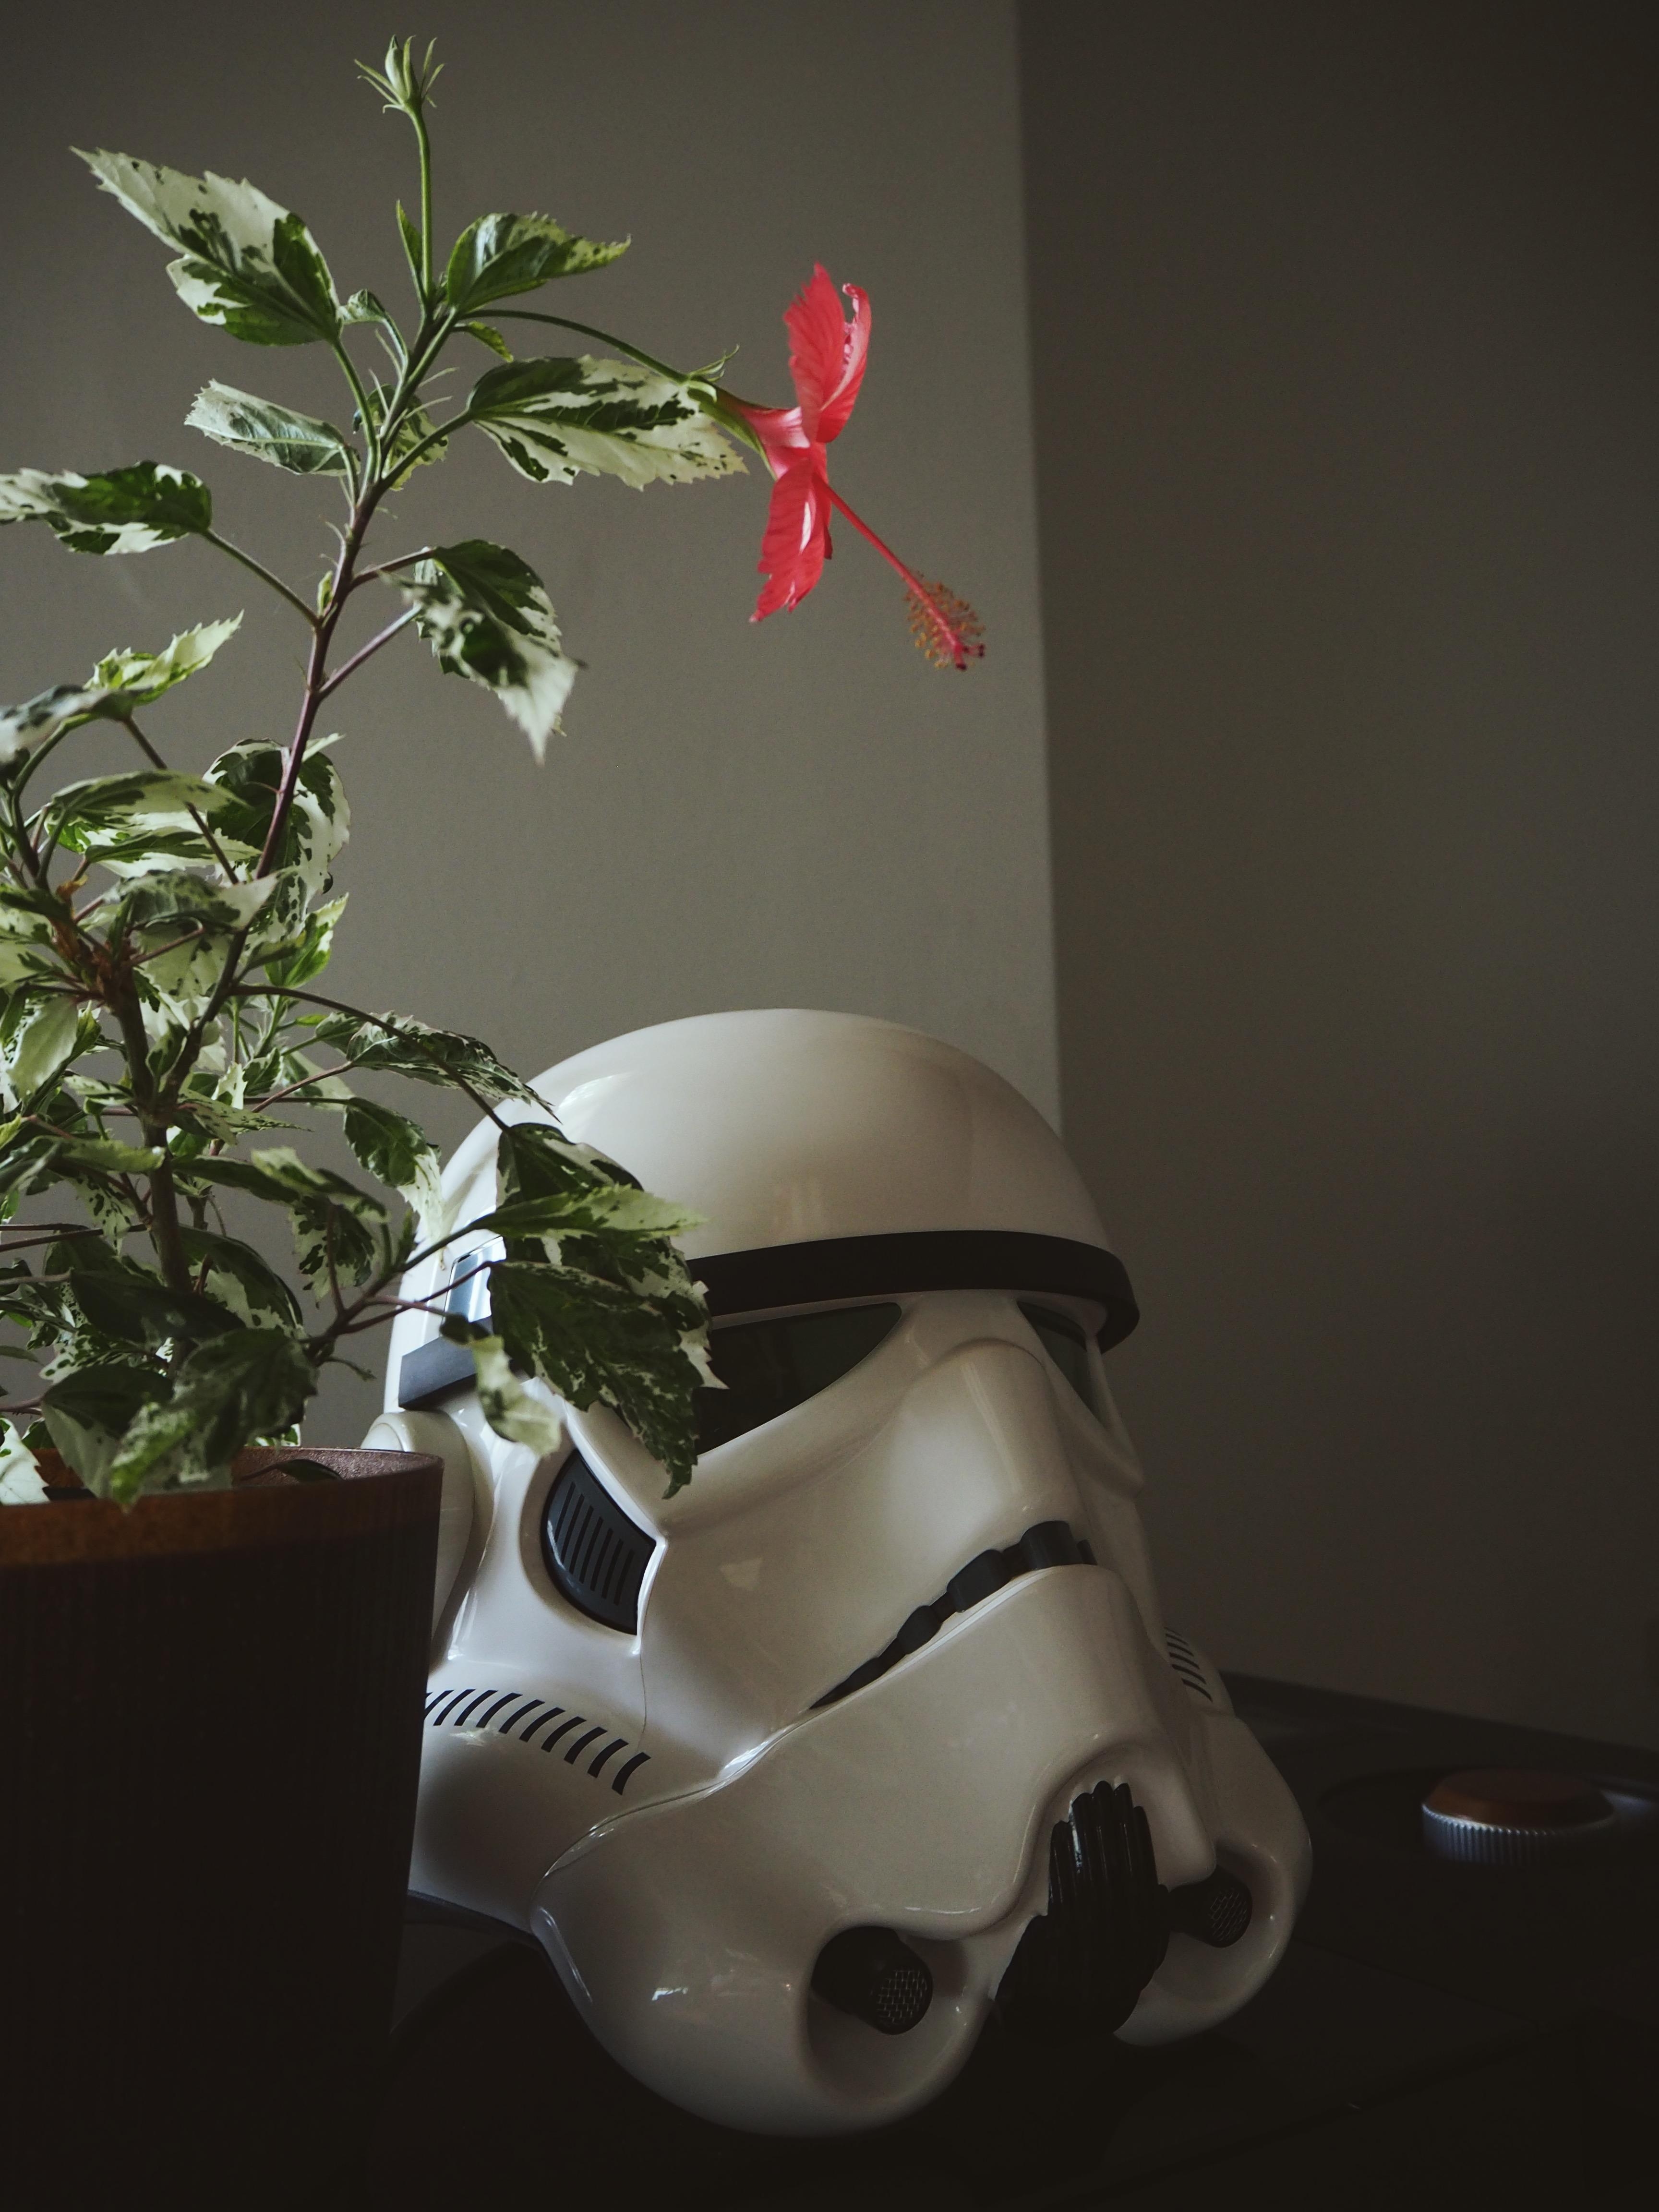 Pflanzen und Star Wars - Episode 1 #interiordecor #starwars #couchstyle #plants #zimmerpflanzen #stormtrooper